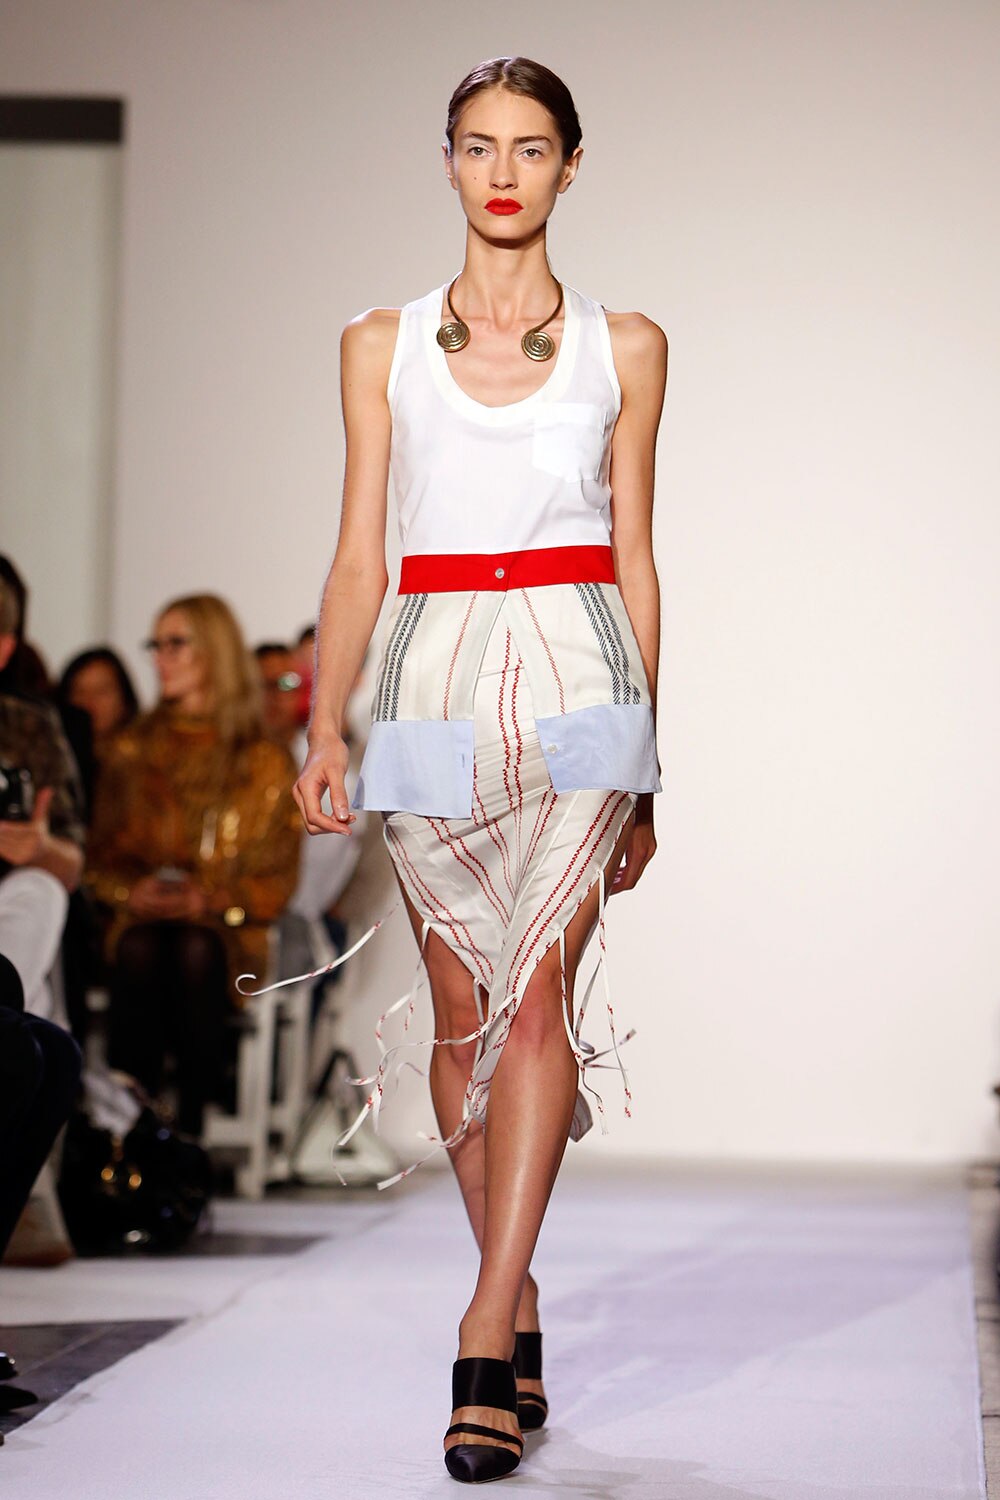 न्यूयार्क में एक फैशन शो में रैंप पर चलती मॉडल।